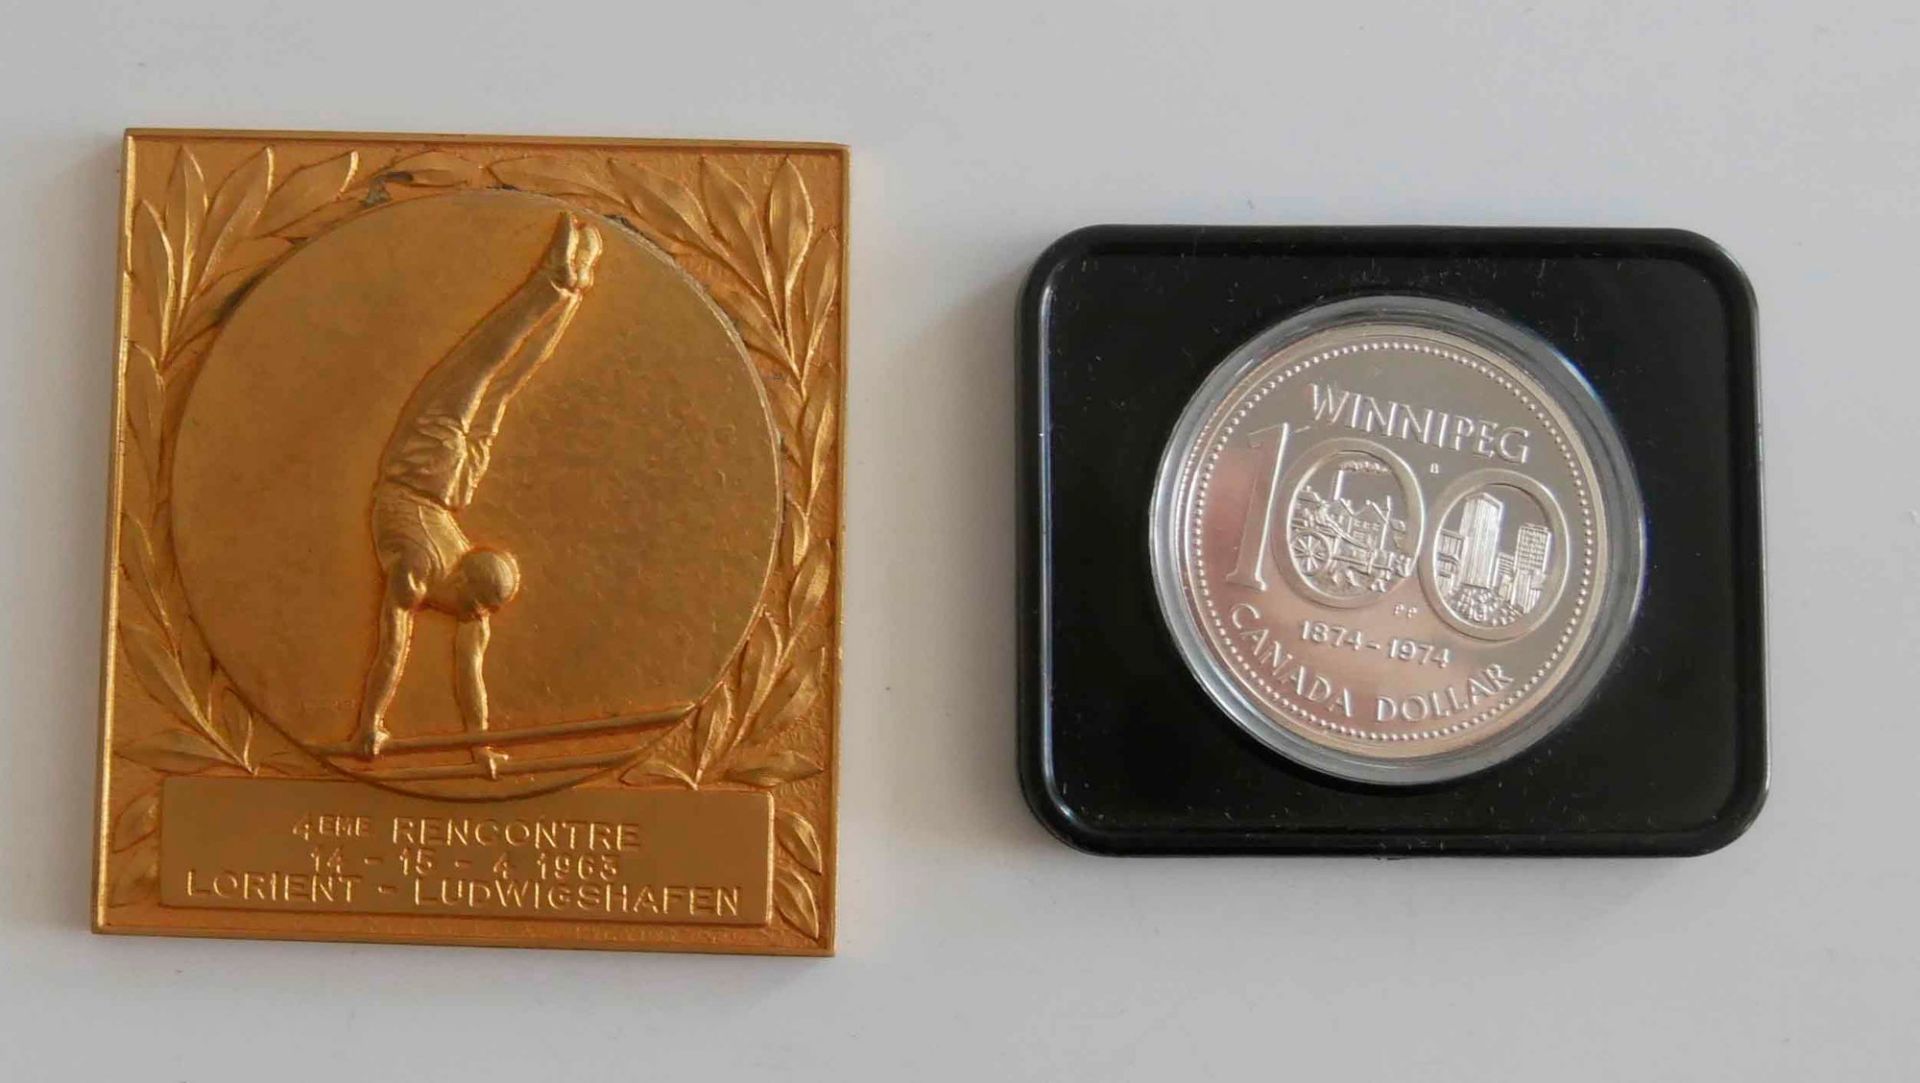 Auszeichnung Turnen, Lorient Ludwigshafen 1963 sowie 1 Canada Dollar 100 Jahre Winnipeg unzirkuliert